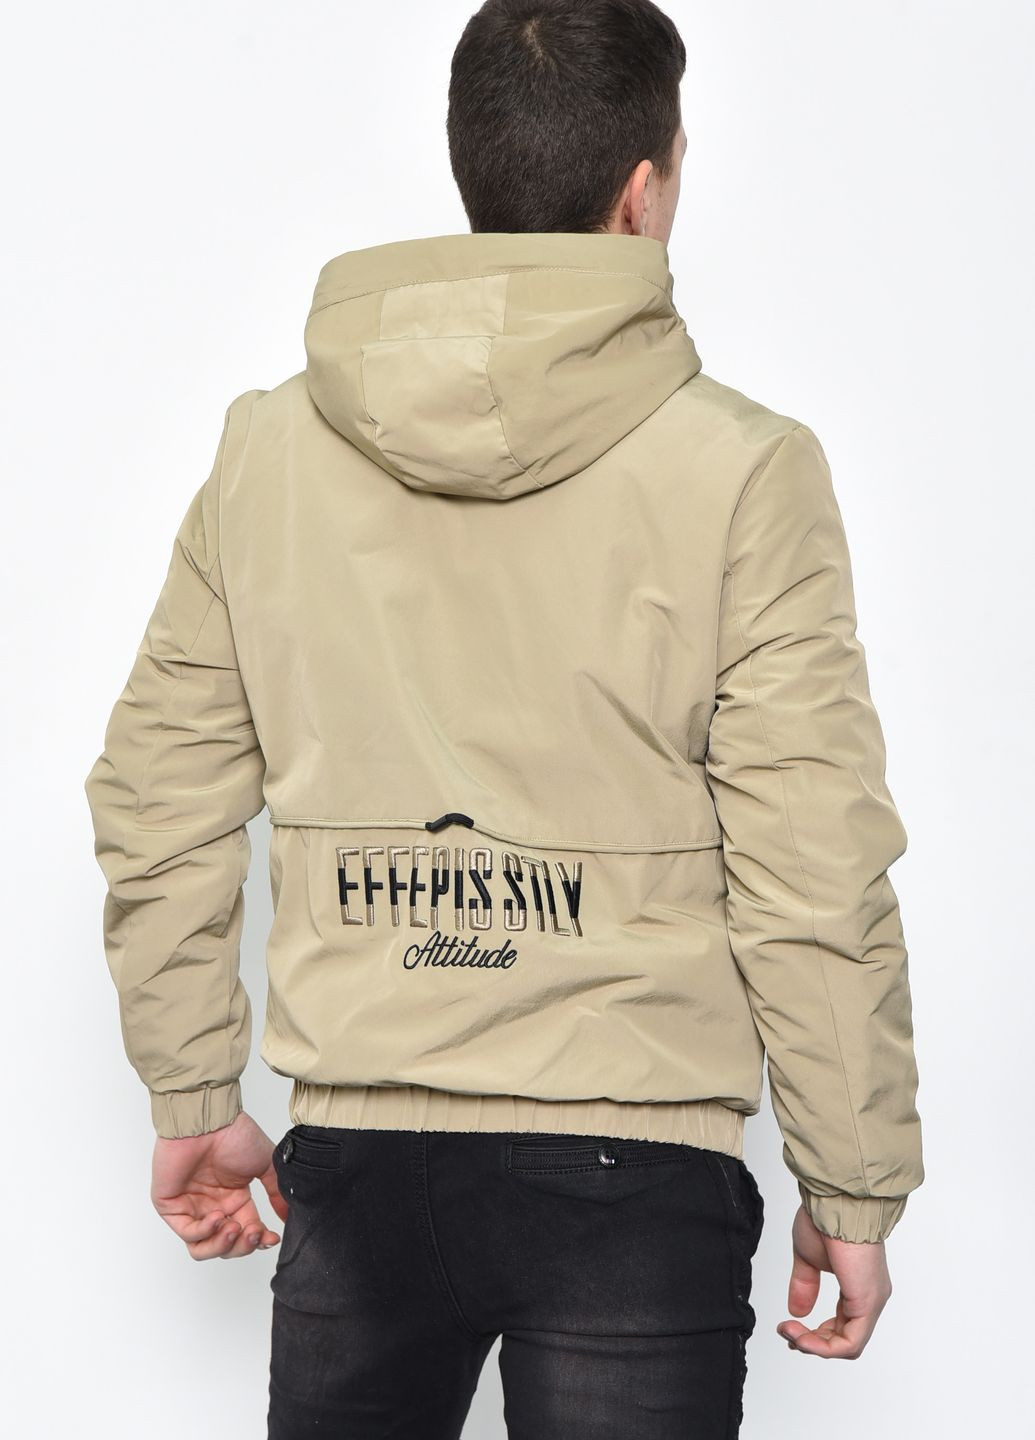 Бежевая демисезонная куртка мужская демисезонная на меху бежевого цвета Let's Shop